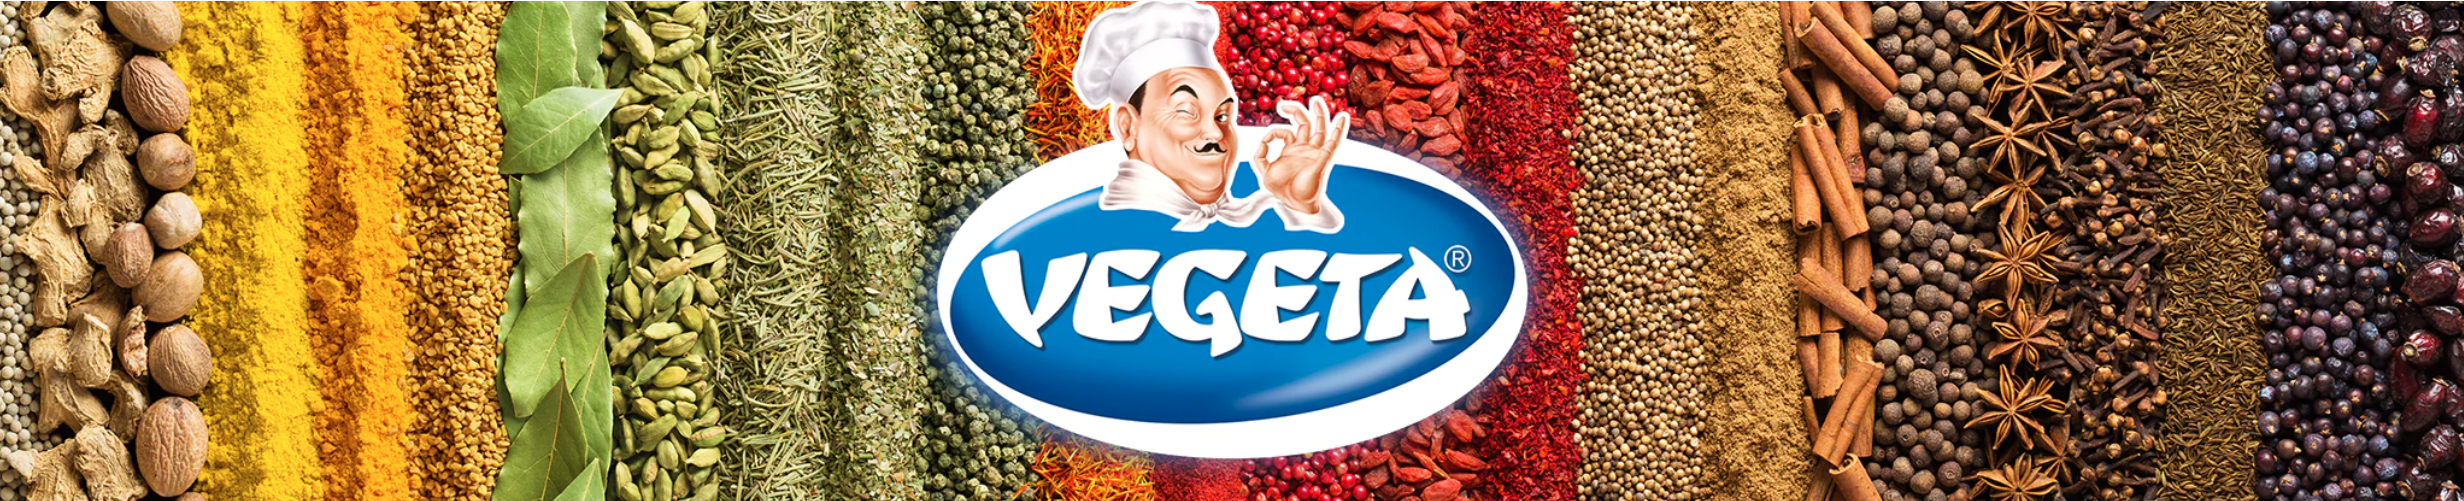 Vegeta - Global Imports & Exports Wholesale